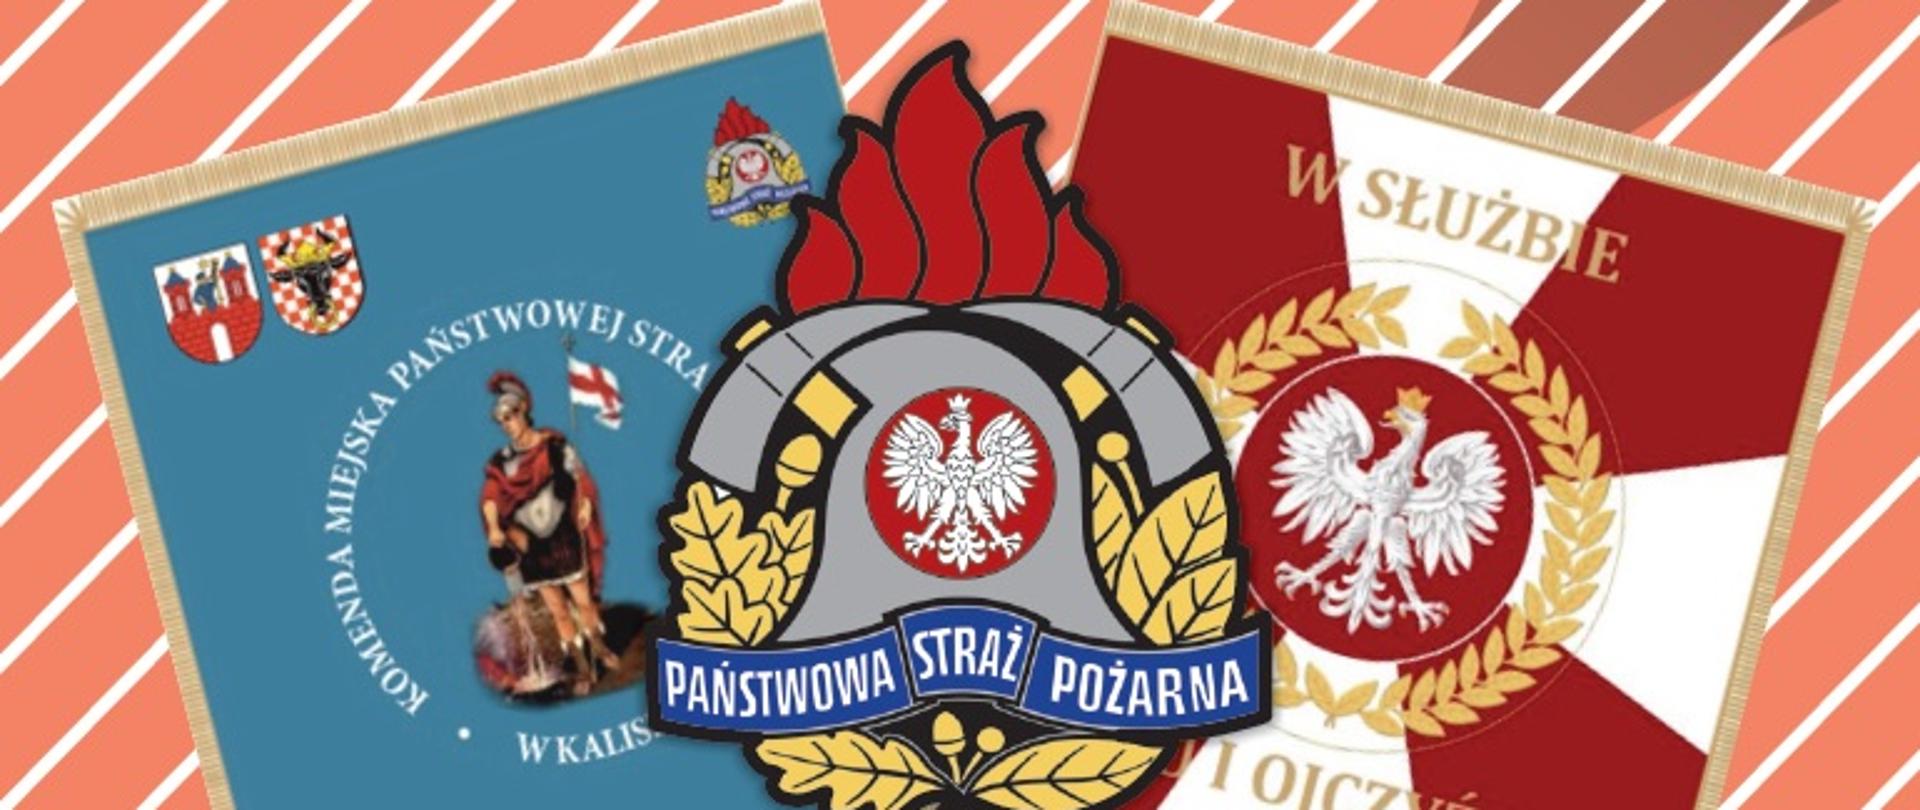 Na zdjęciu widać logo PSP. Po obu stronach loga PSP widać wizualizację sztandaru KM PSP Kalisz. Po prawej na sztandarze godło państwowe, po lewej postać św. Floriana i wokół napis. Pod spodem biało-czerwone paski.